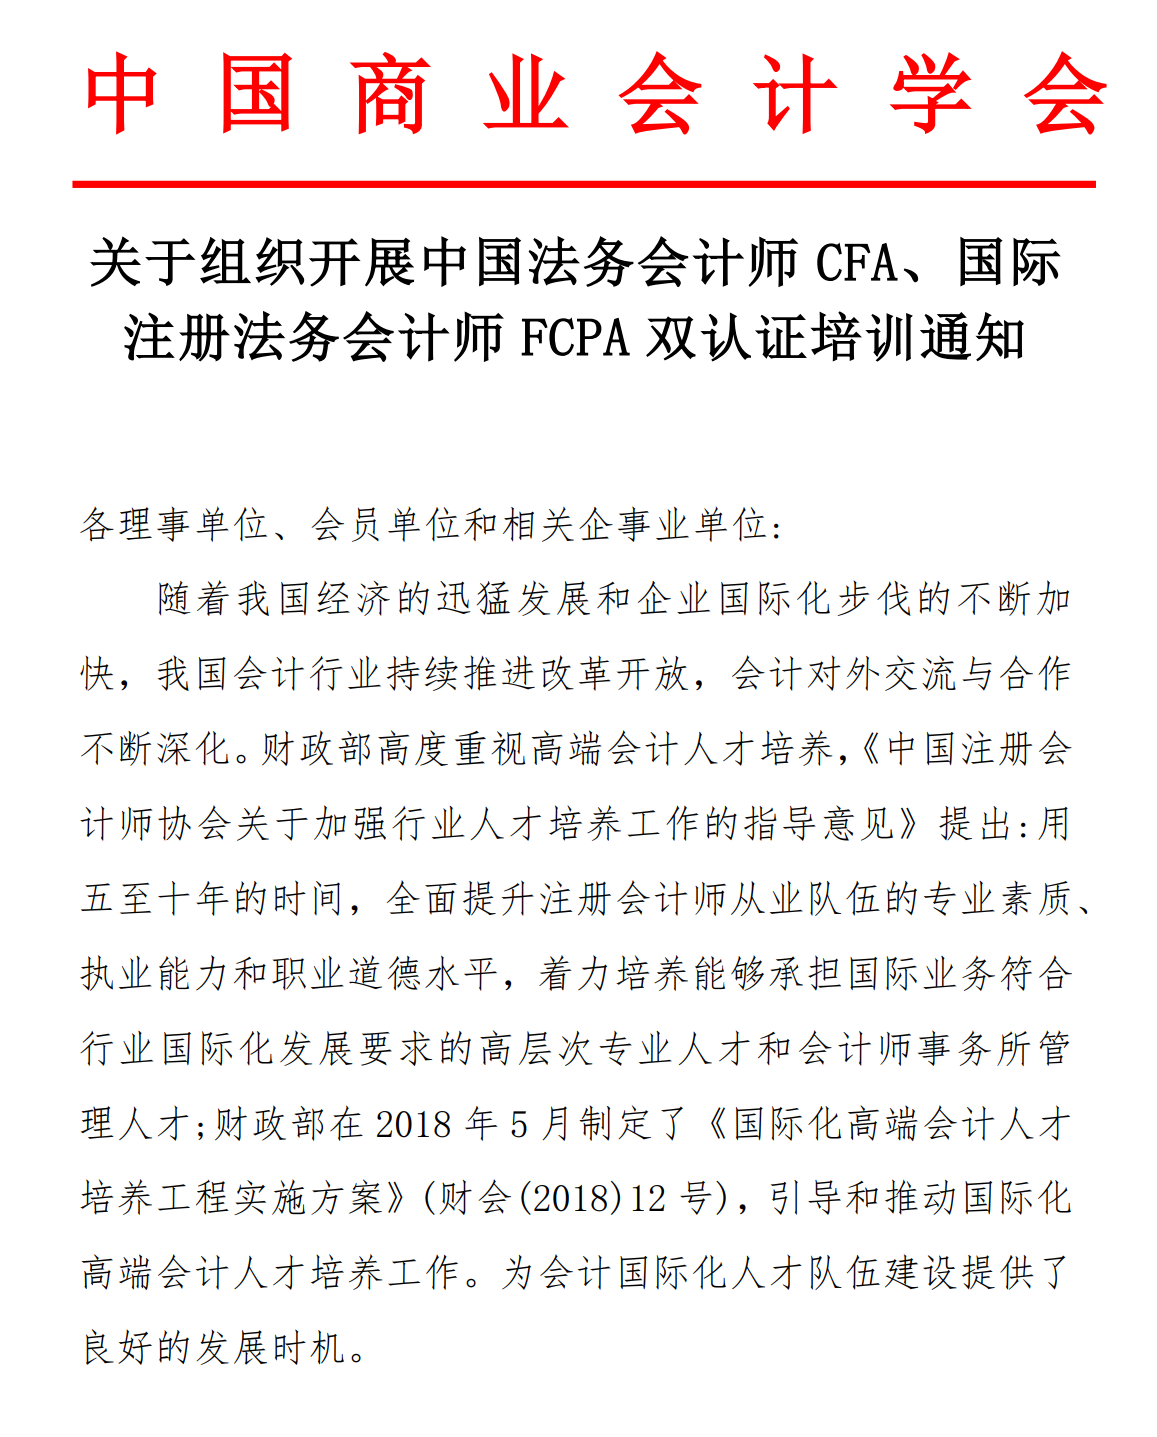 中国商业会计学会关于组织开展中国法务会计师CFA、国际注册法务会计师FCPA认证培训的通知